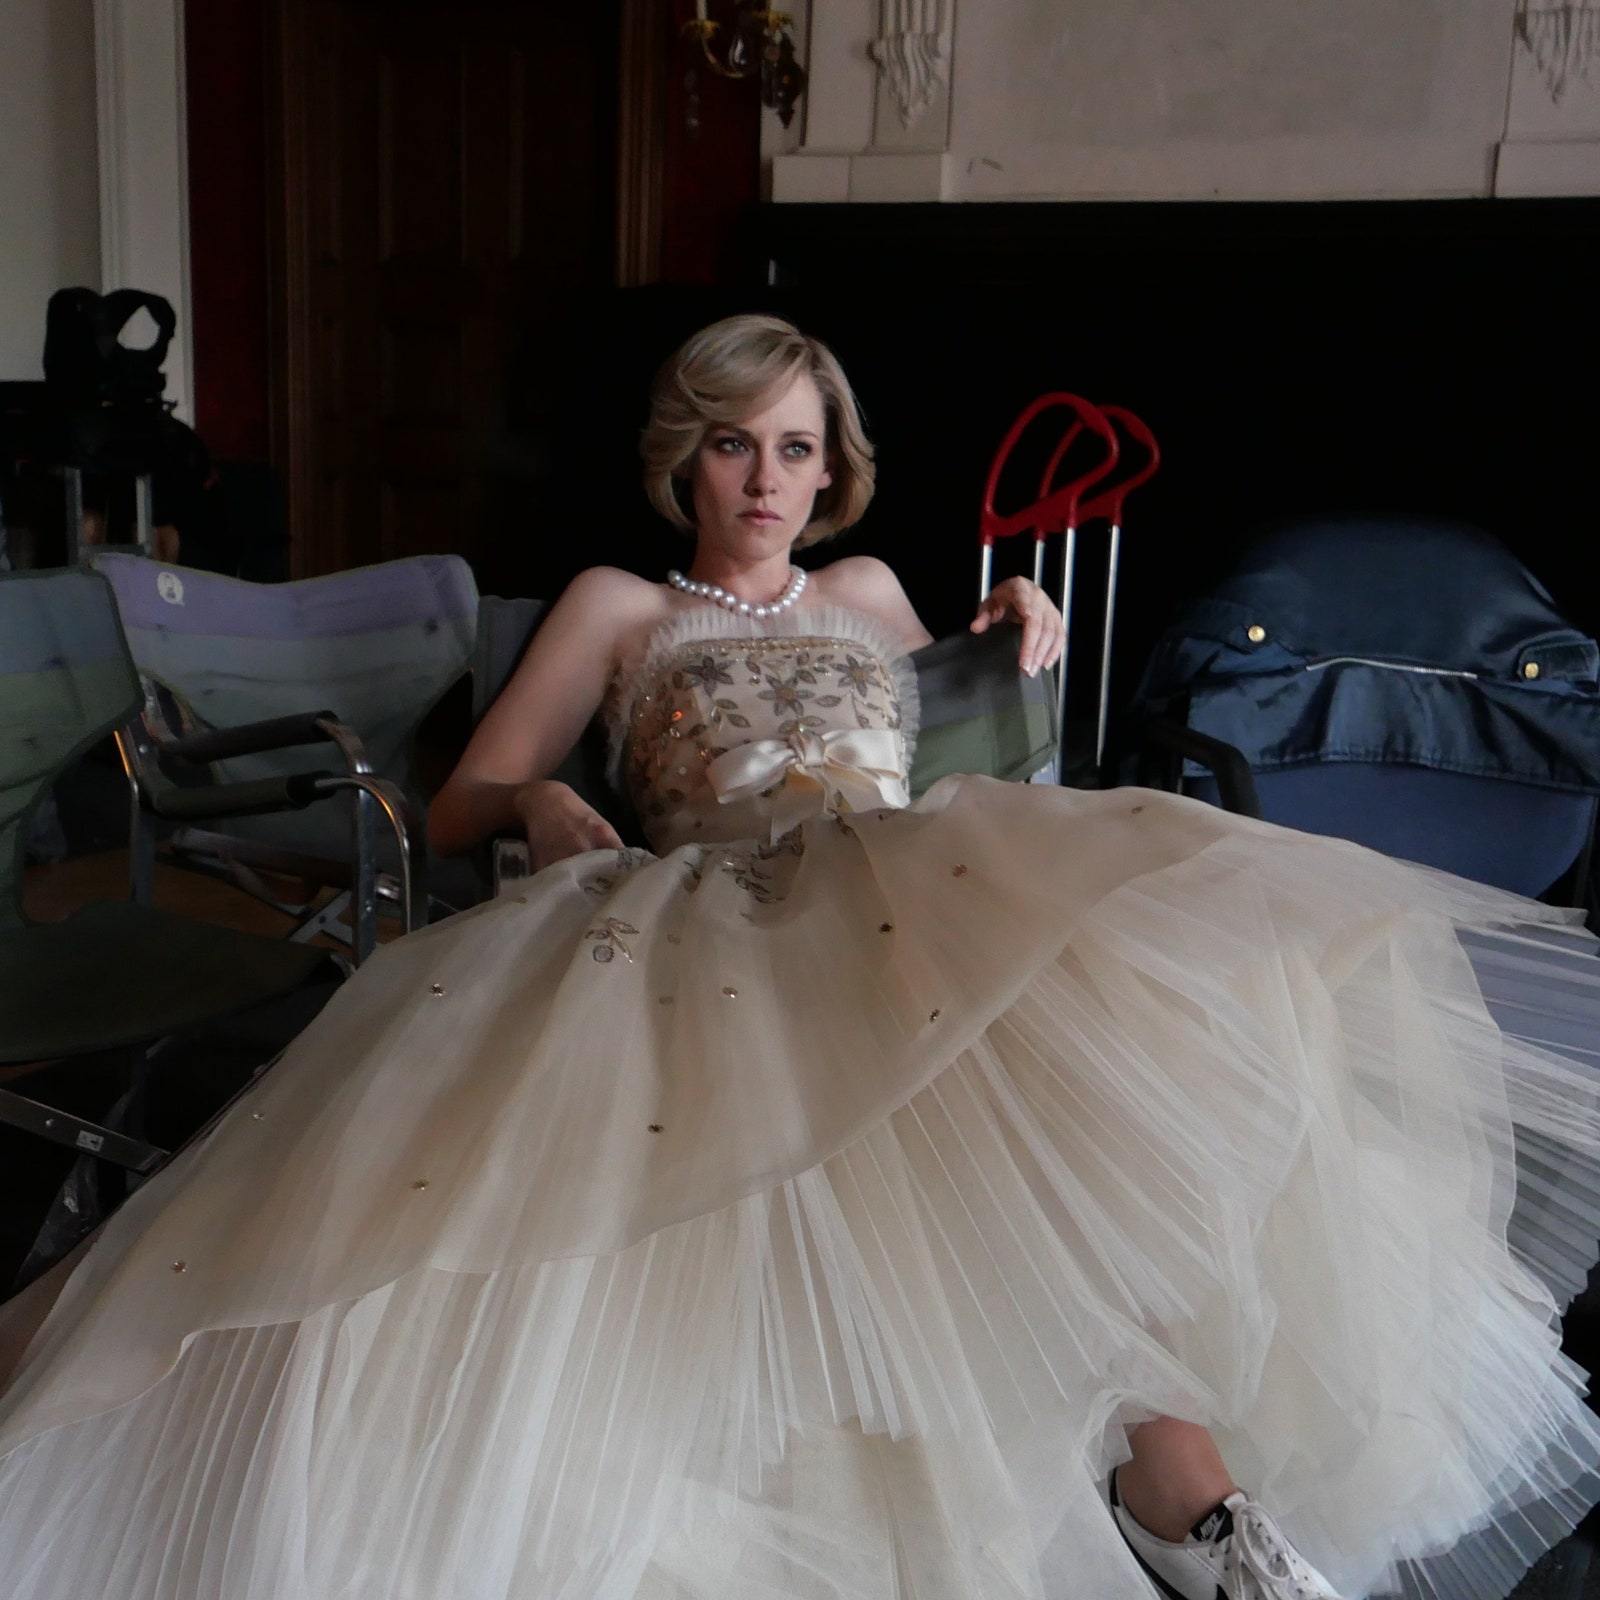 Váy Chanel độc quyền giá 2 tỉ của Lý Nhã Kỳ đã bị đụng hàng